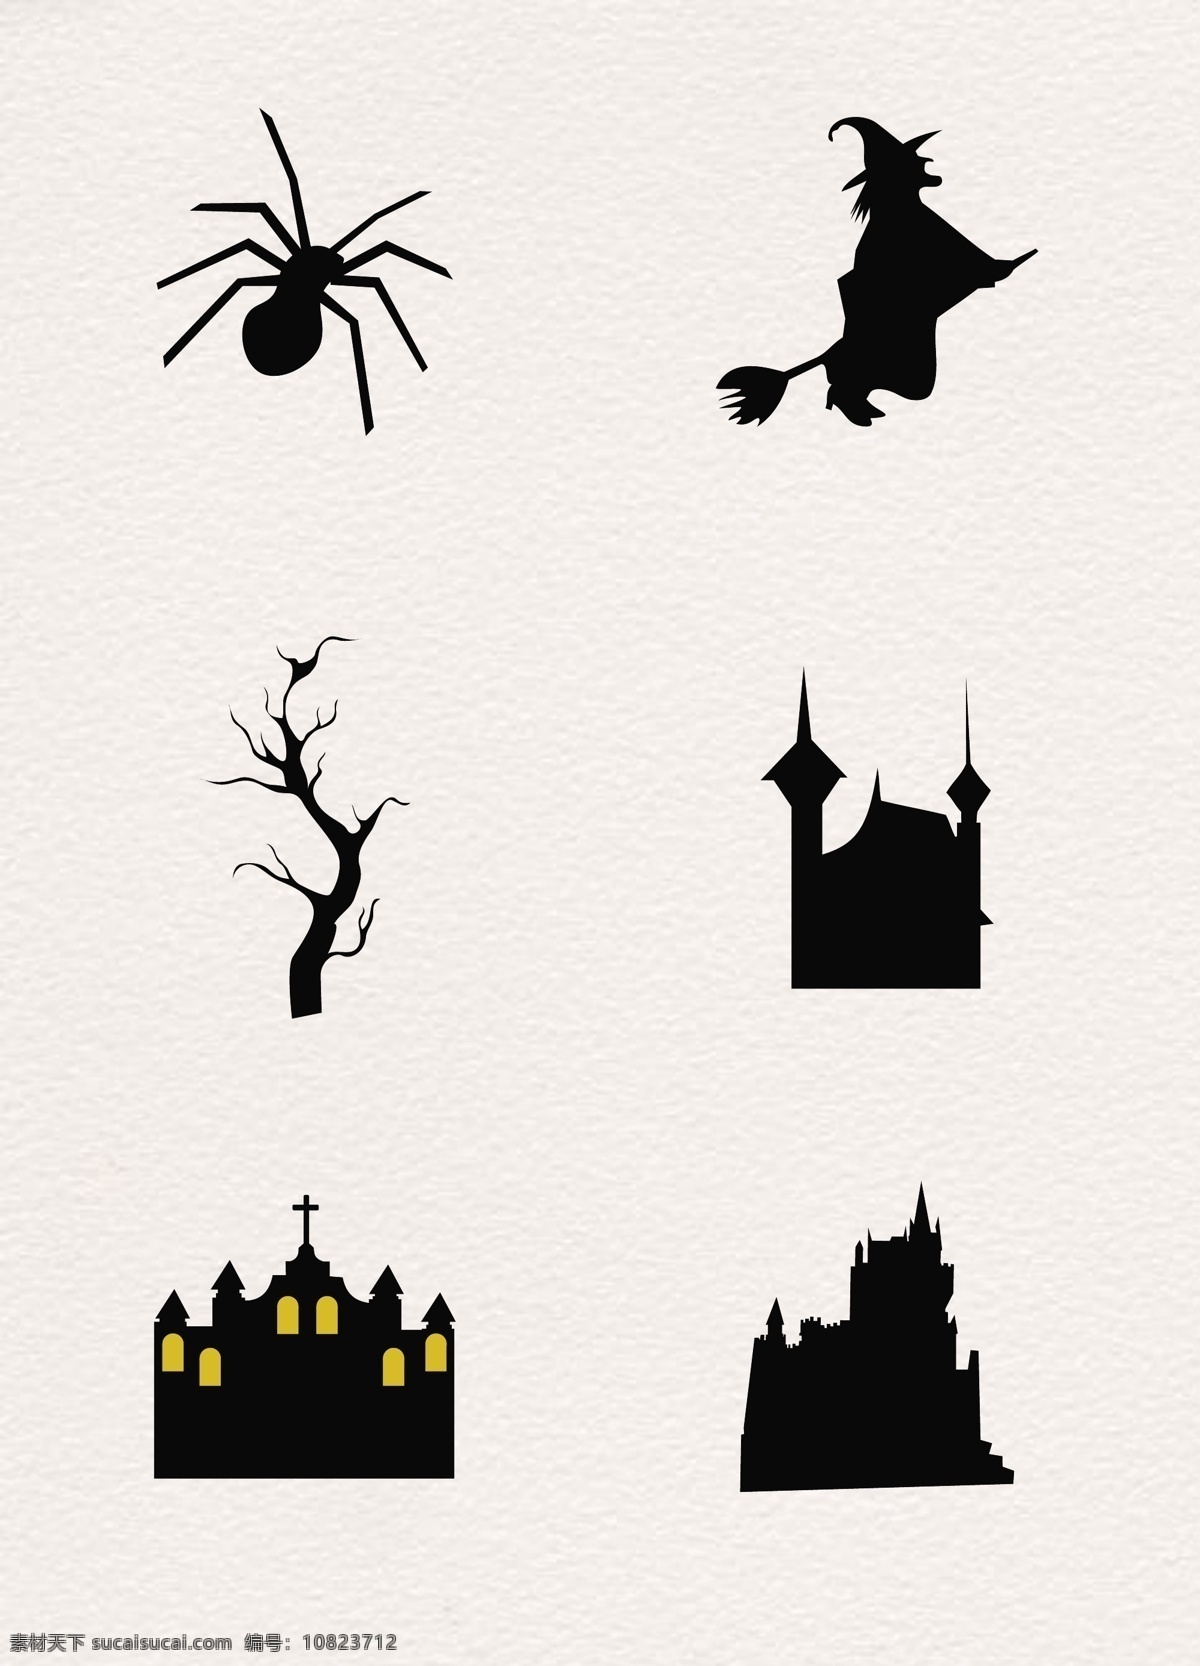 黑色 简约 万圣节 元素 剪影 城堡 扁平化 矢量图 卡通 万圣节元素 剪影设计 毒蜘蛛 女巫 树